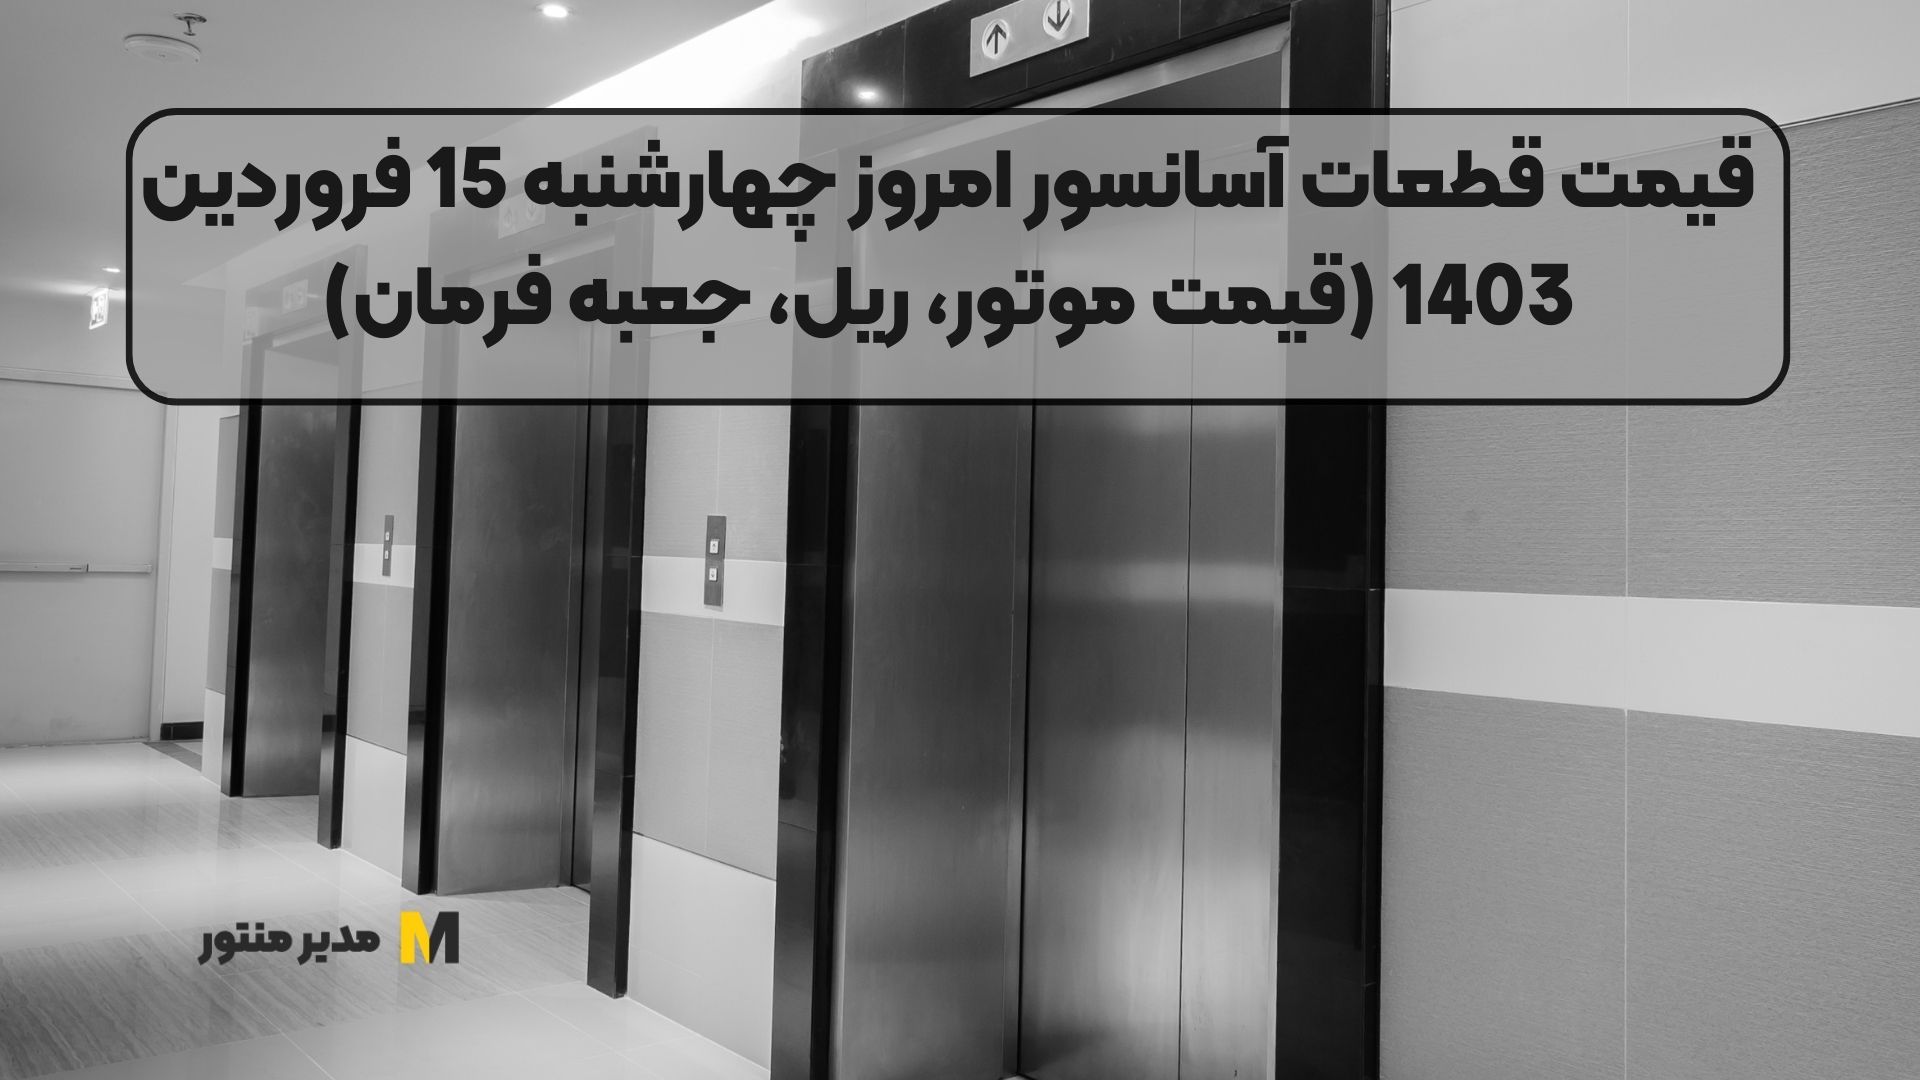 قیمت قطعات آسانسور امروز چهارشنبه 15 فروردین 1403 (قیمت موتور، ریل، جعبه فرمان)